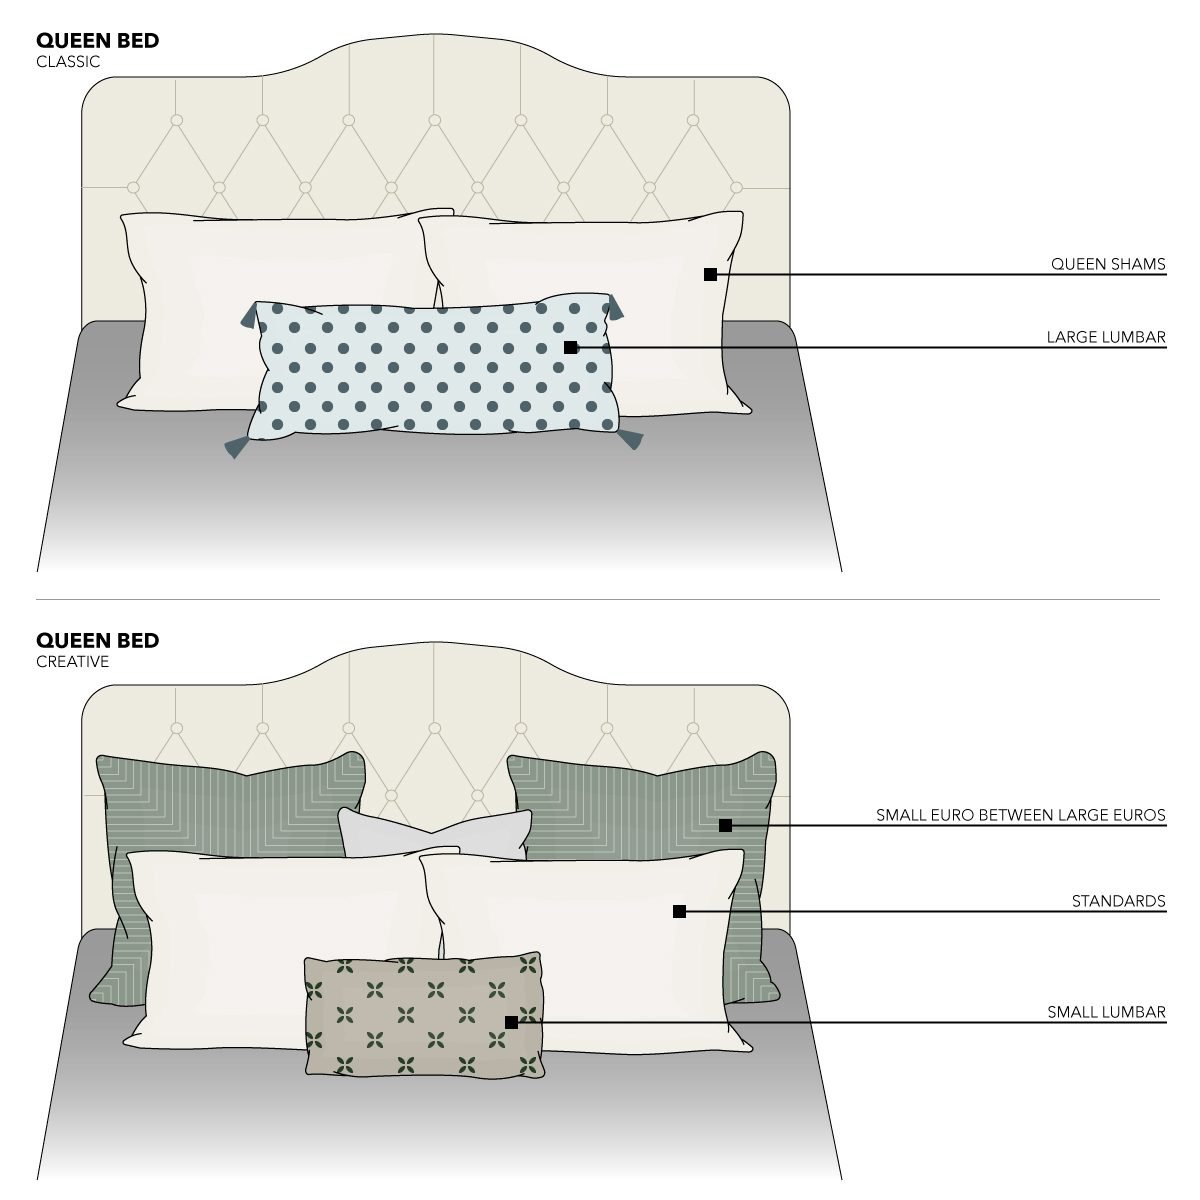 Pillow Arrangements for Queen Beds